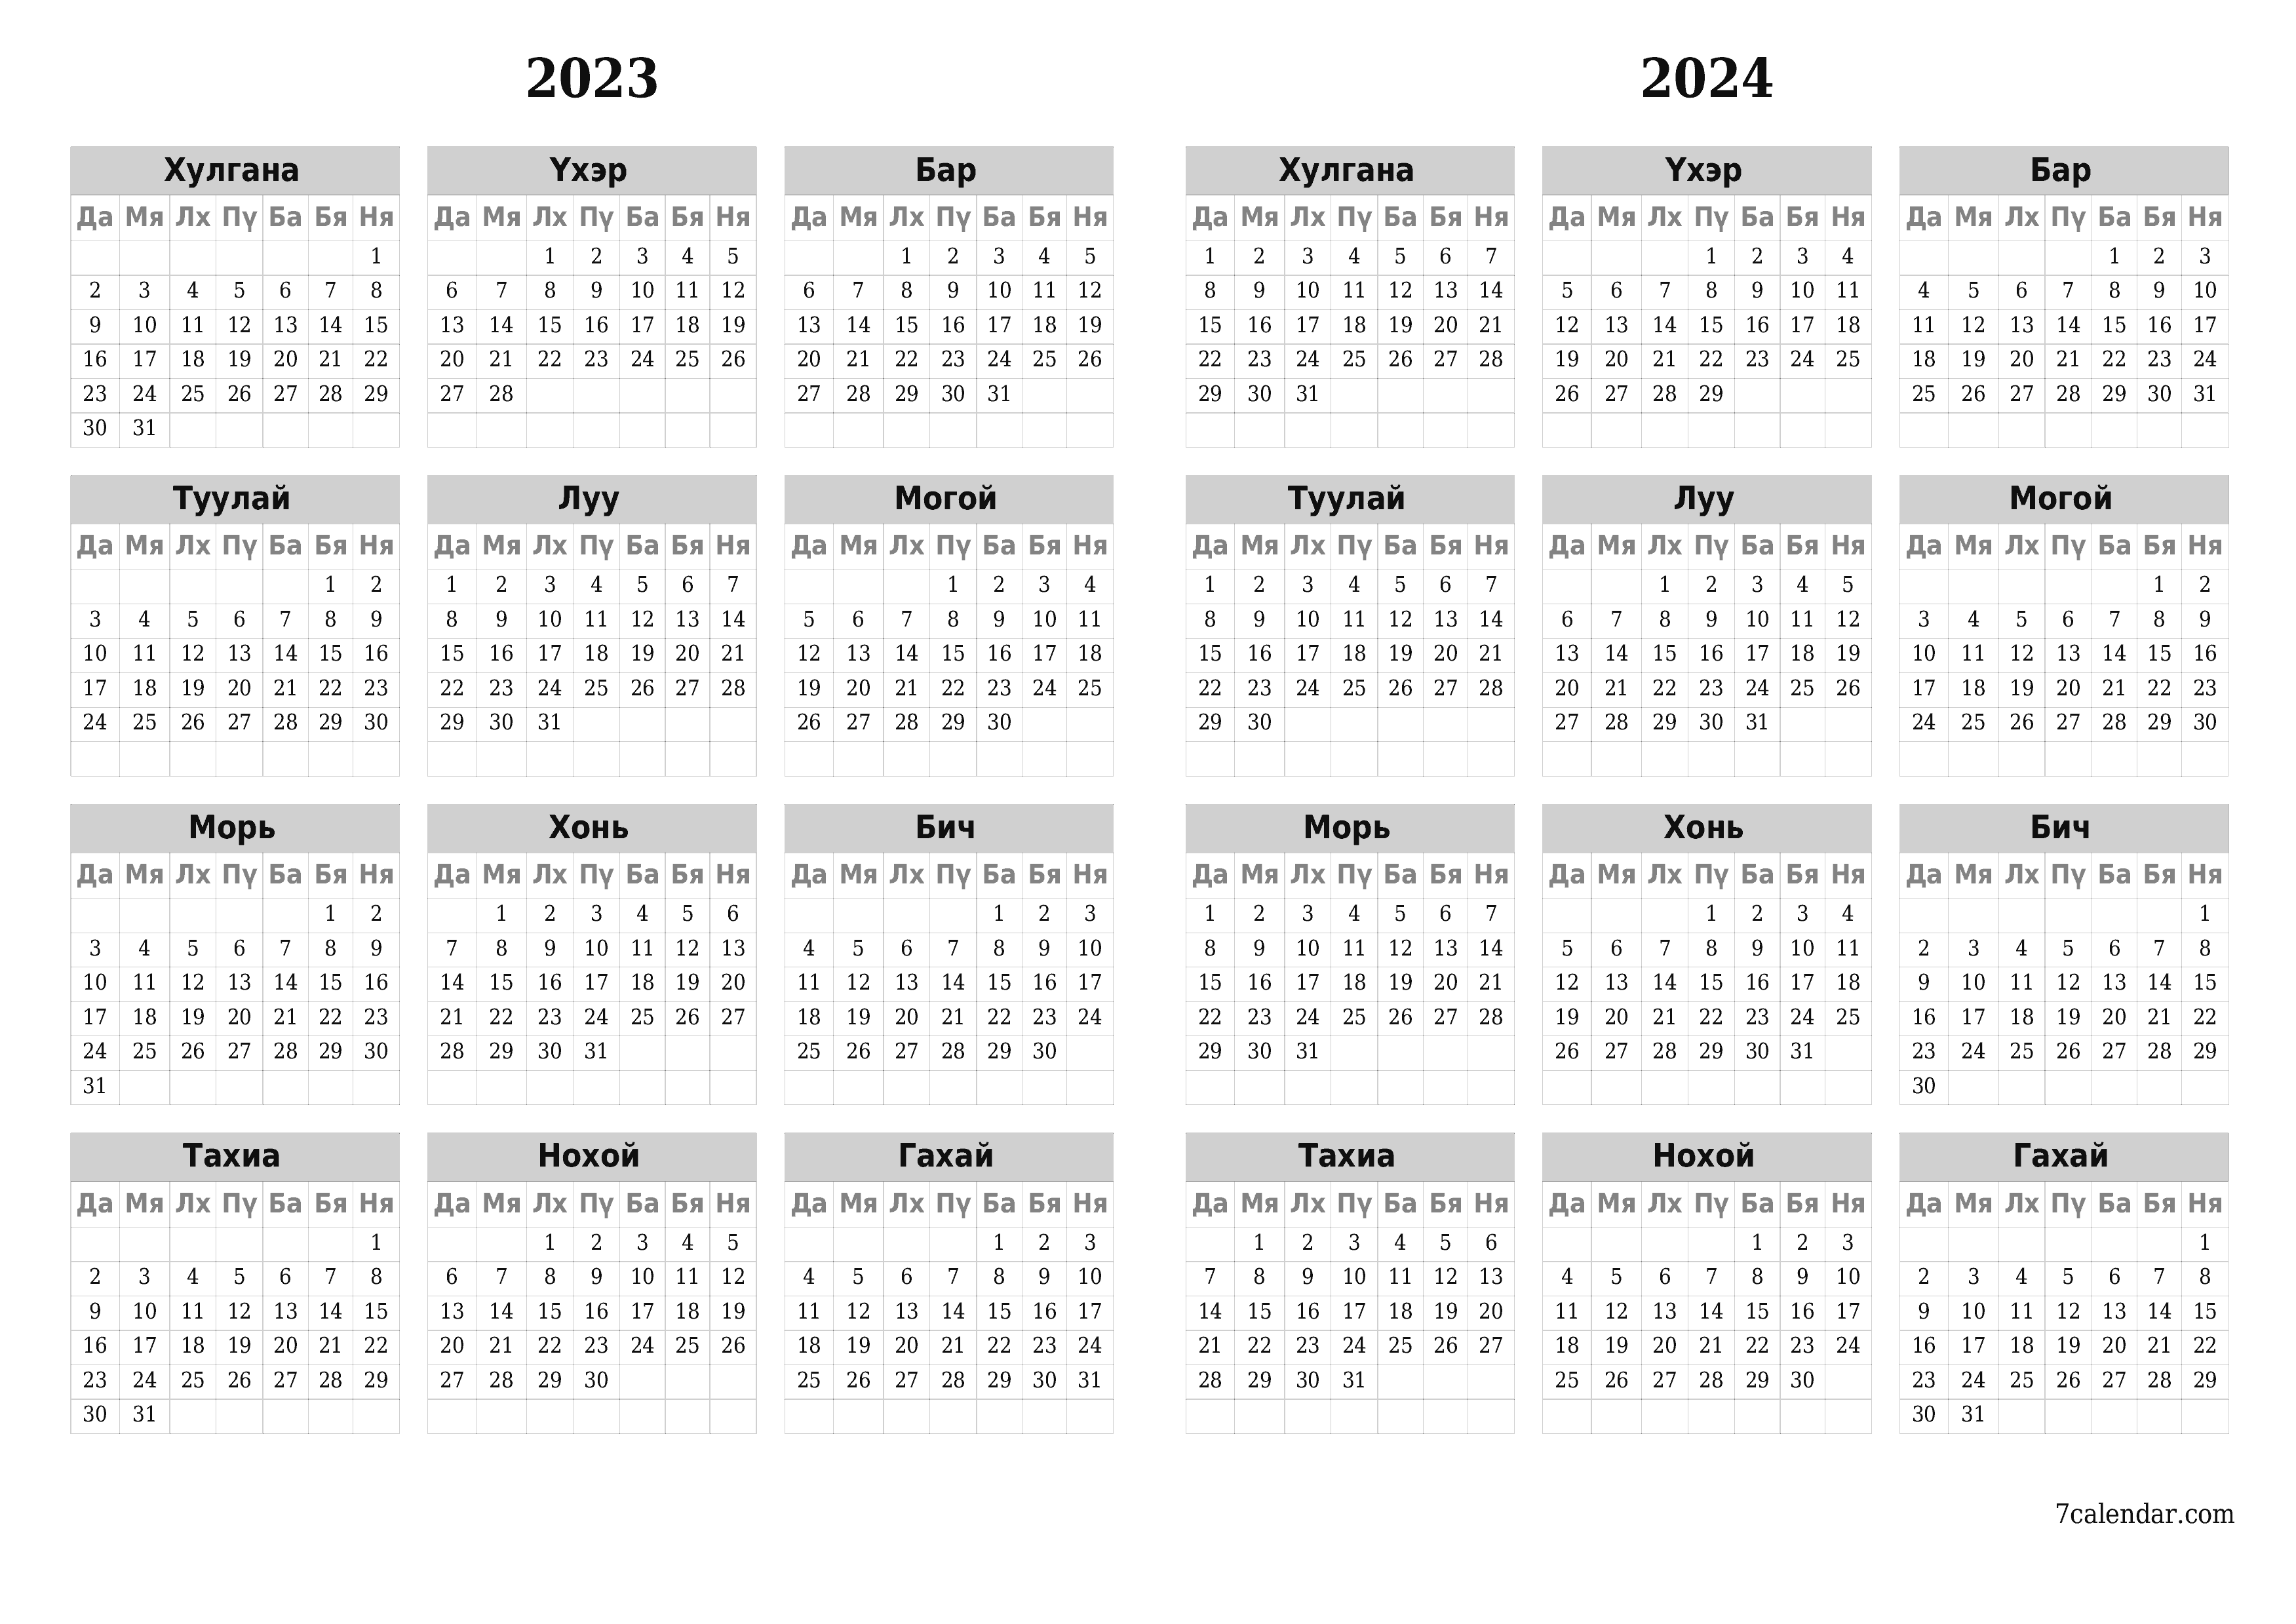 хэвлэх боломжтой ханын календарийн загвар үнэгүй хэвтээ Жилд хуанли Үхэр (Үхэ) 2023